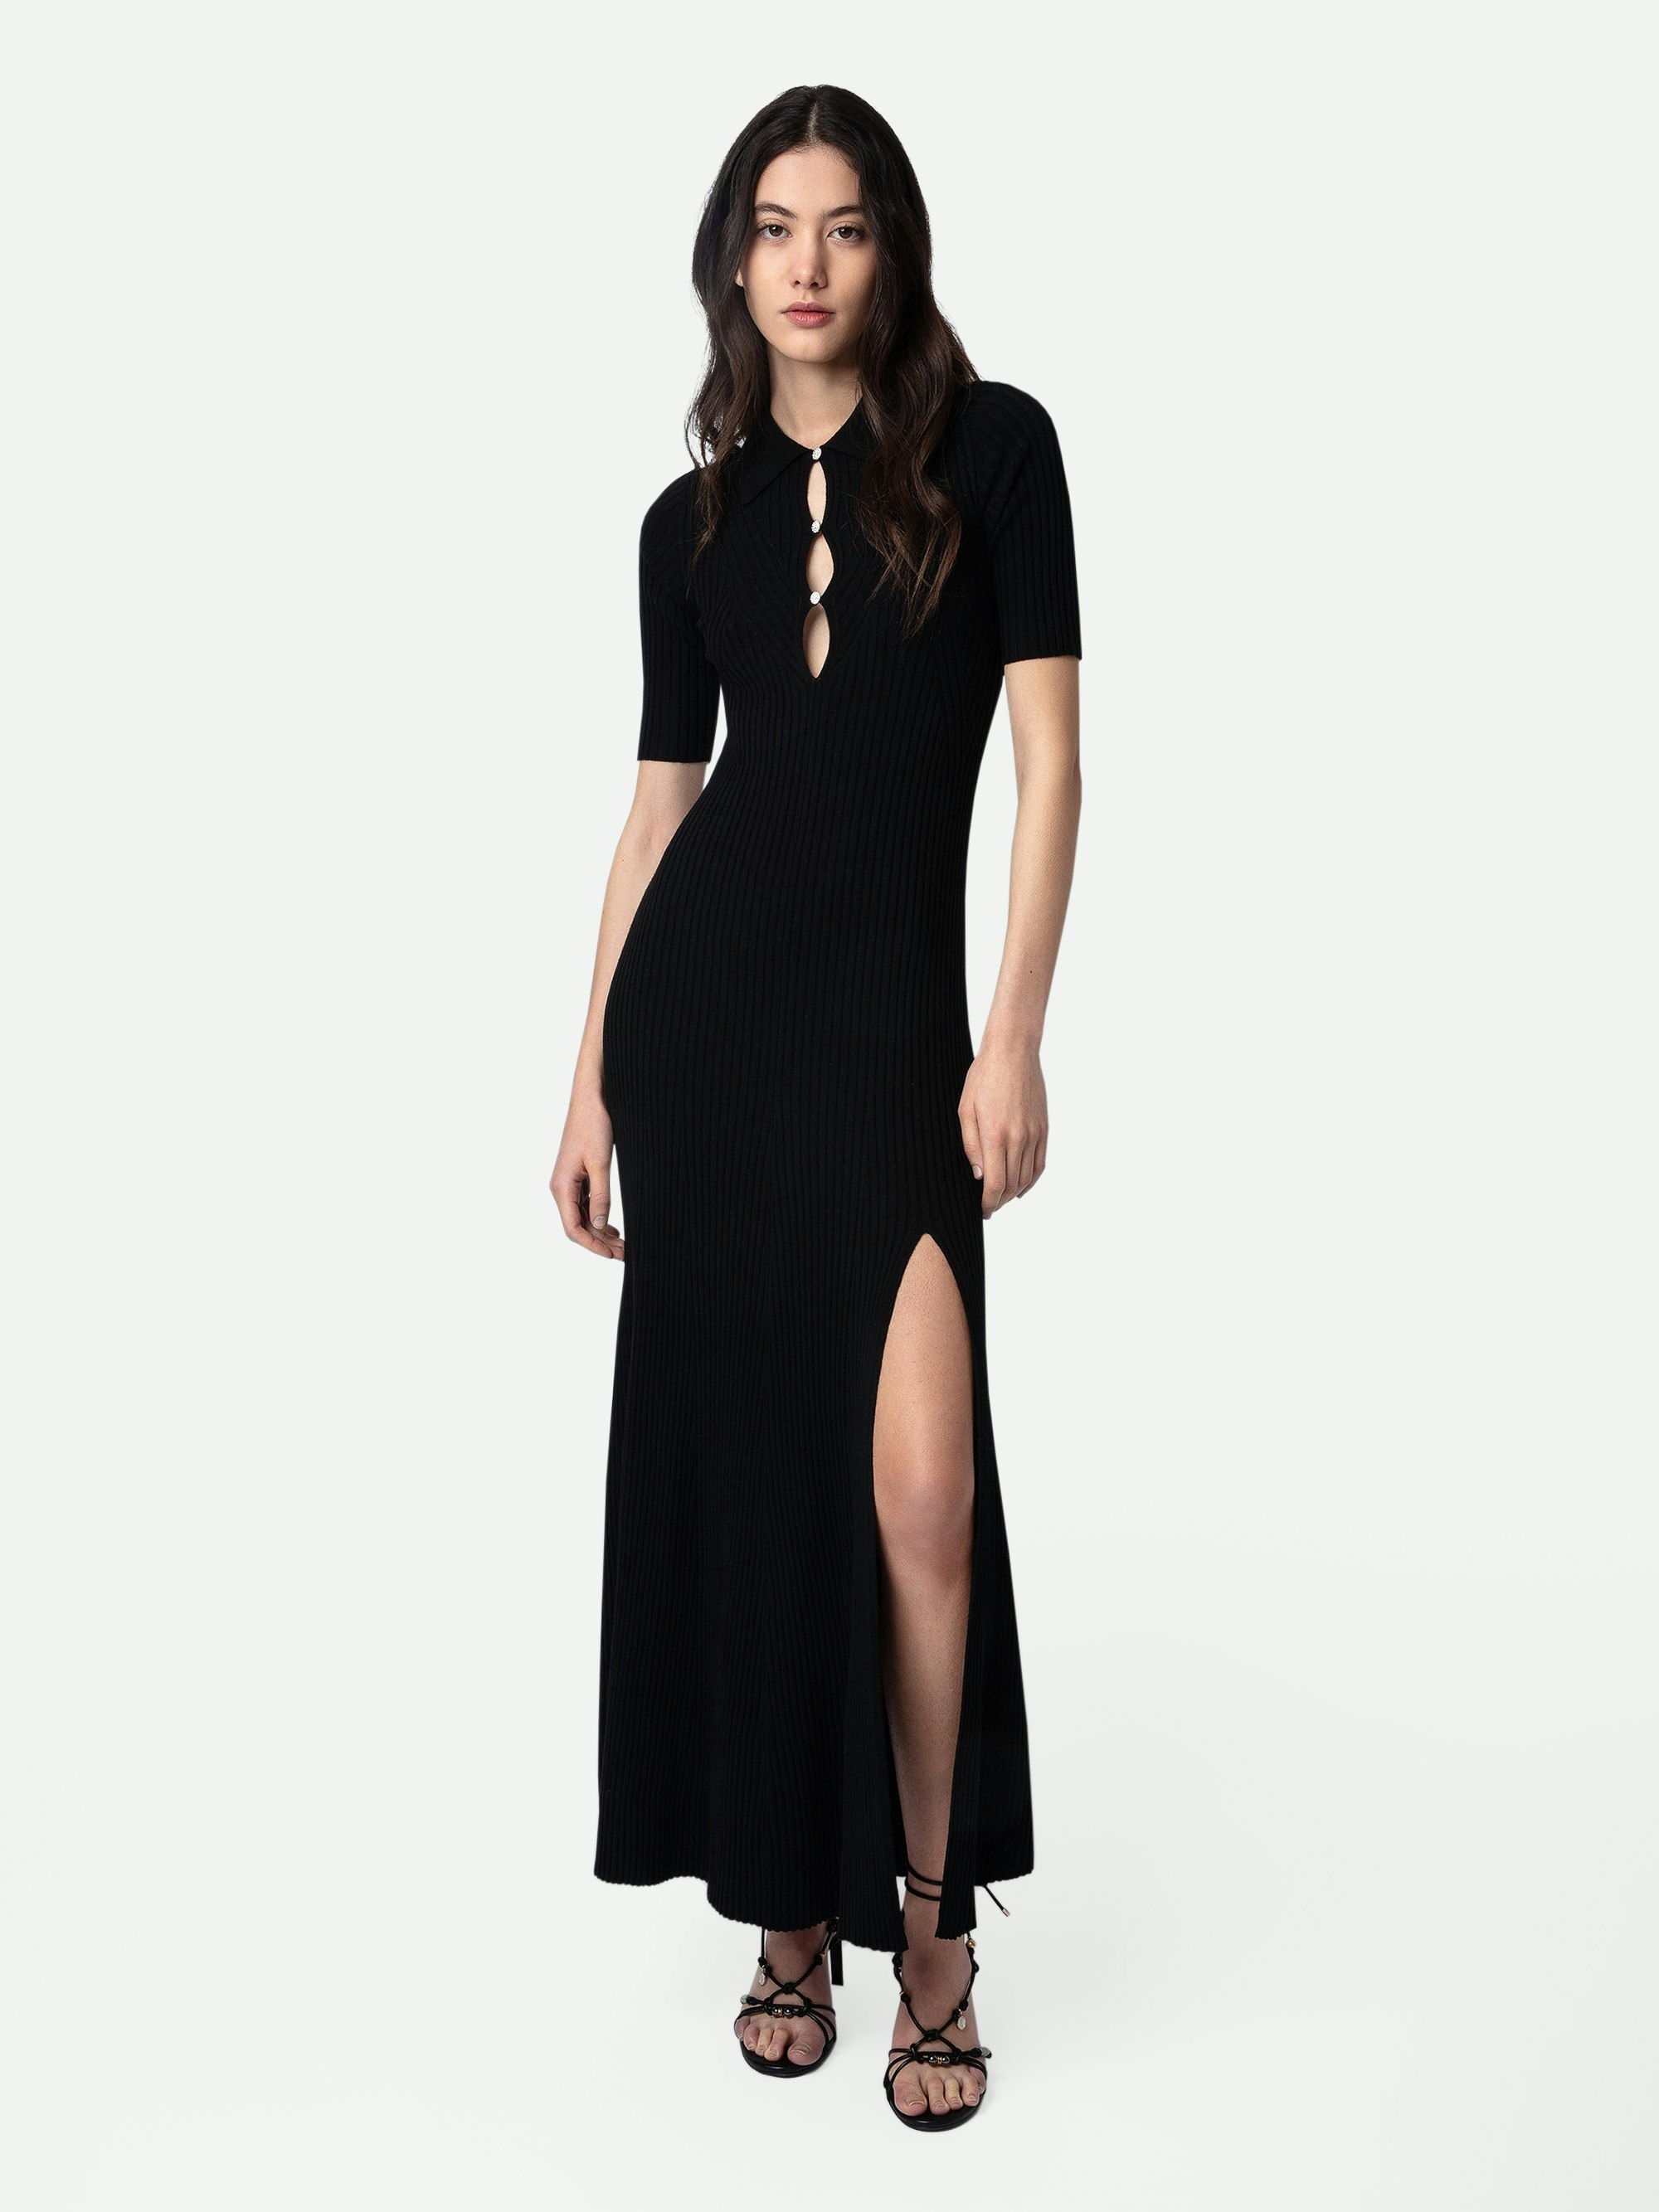 Kleid Lysa - Langes, geschlitztes Kleid aus Merinowolle in Schwarz mit Hemdkragen, kurzen Ärmeln und Zierknöpfen mit Strass.